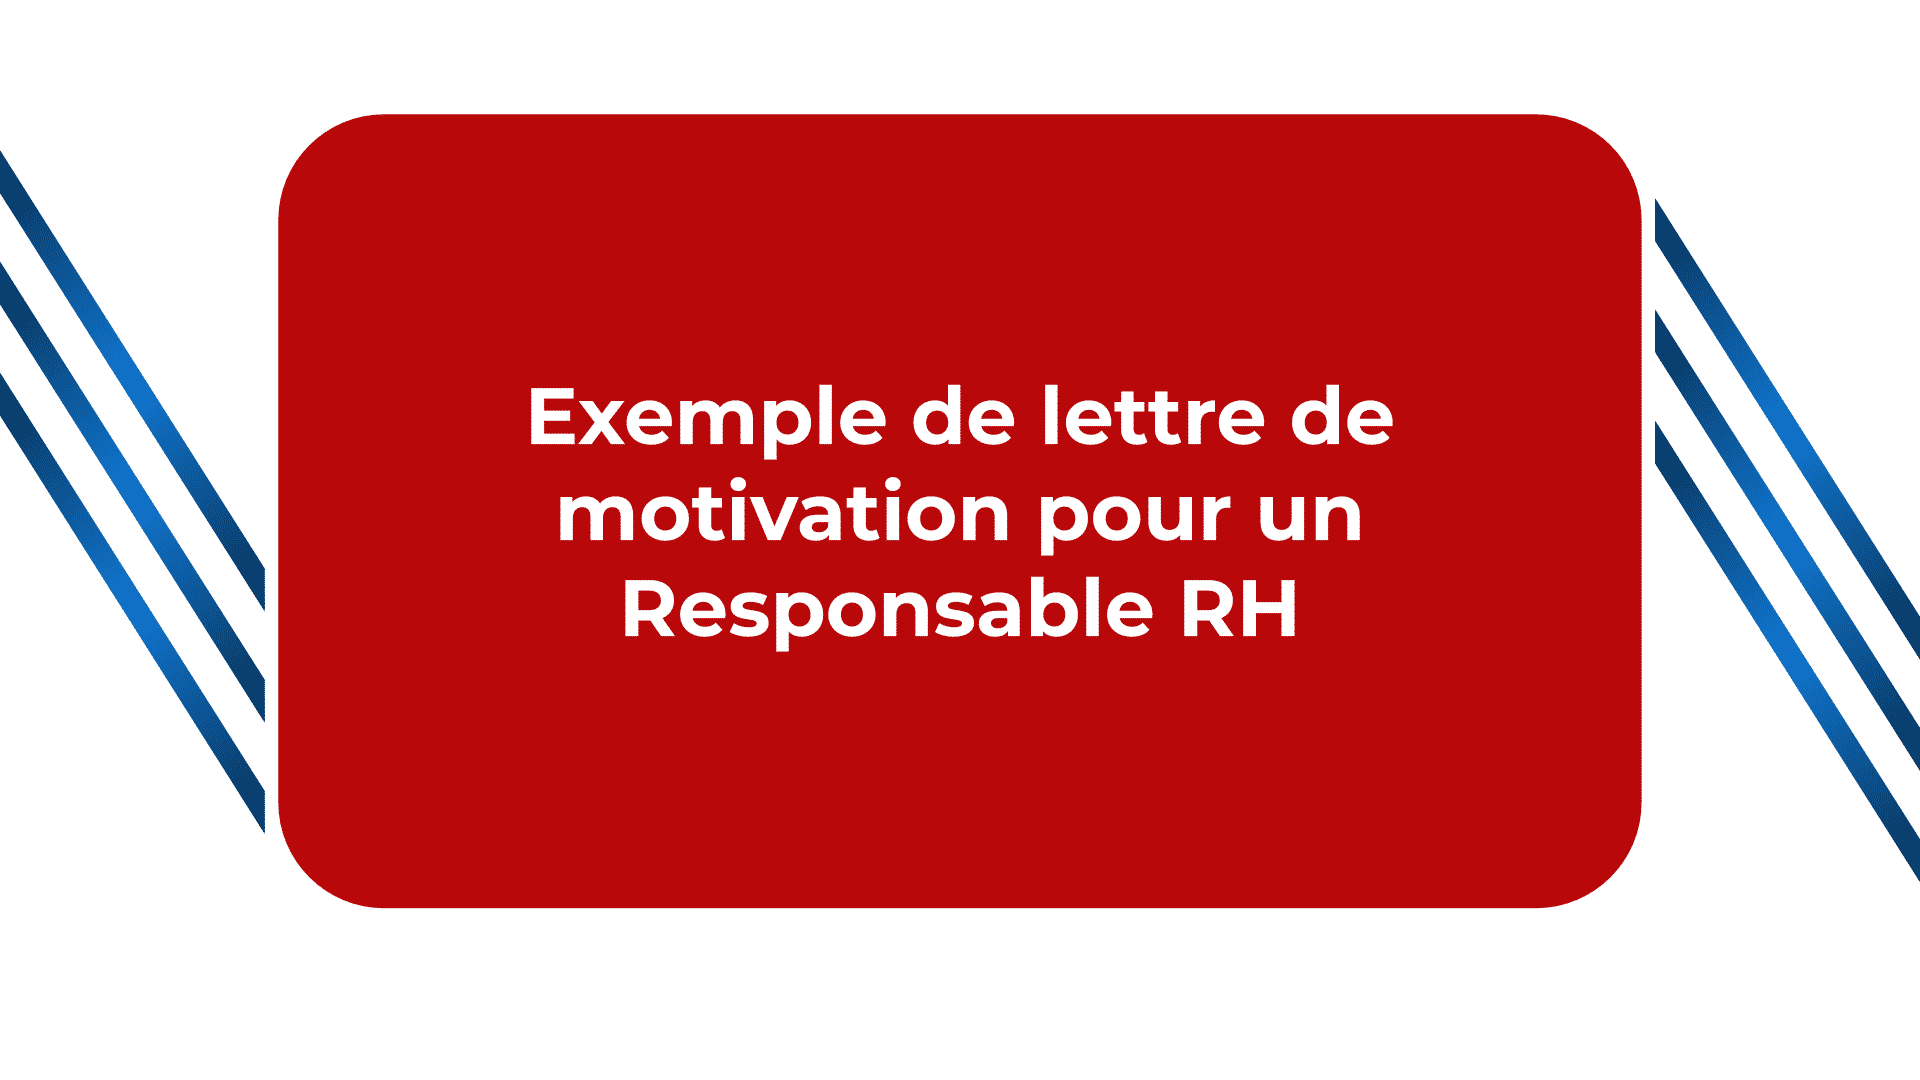 Exemple de lettre de motivation pour un Responsable RH